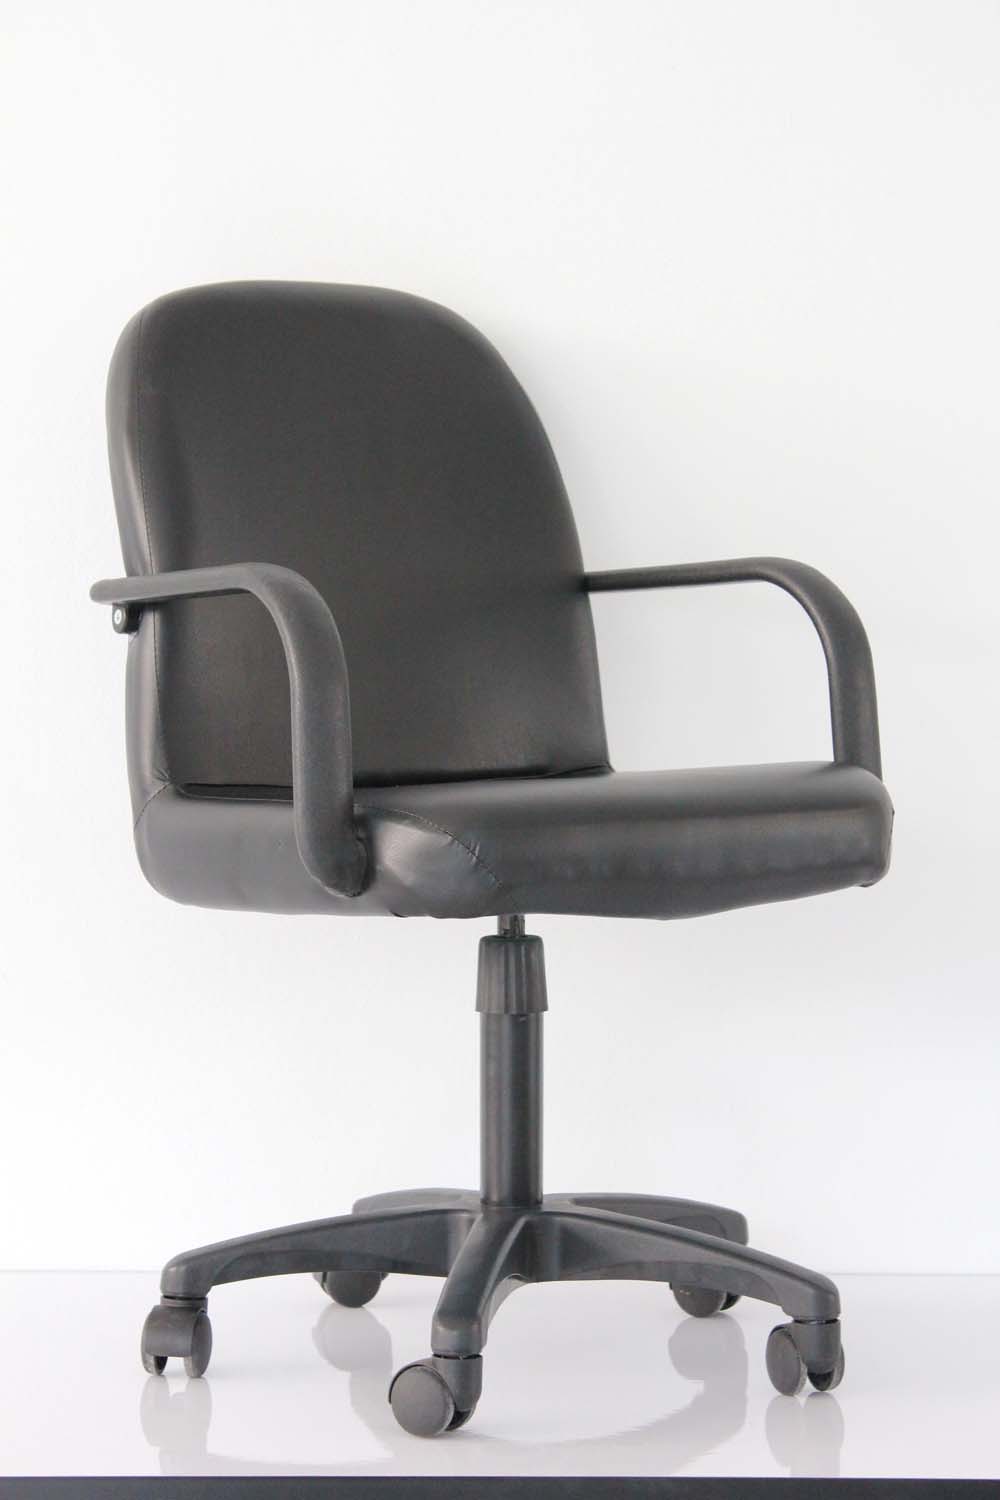 ผลิต  จำหน่ายเก้าอี้สำนักงานราคาถูก ทั้งปลีก ส่ง สนใจติดต่อ 084-033-5919 ธนพล รูปที่ 1